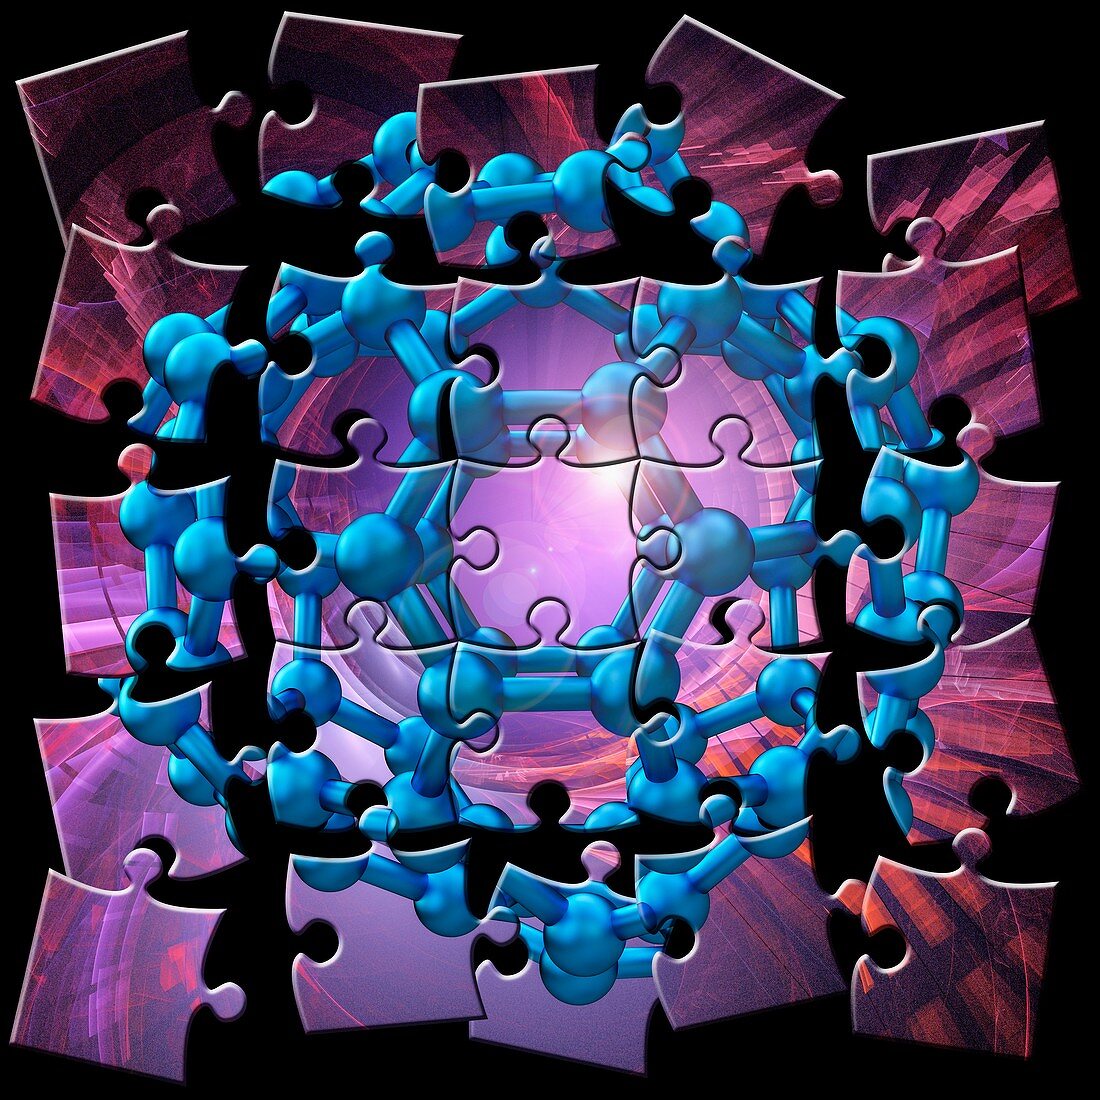 Buckyball puzzle, illustration